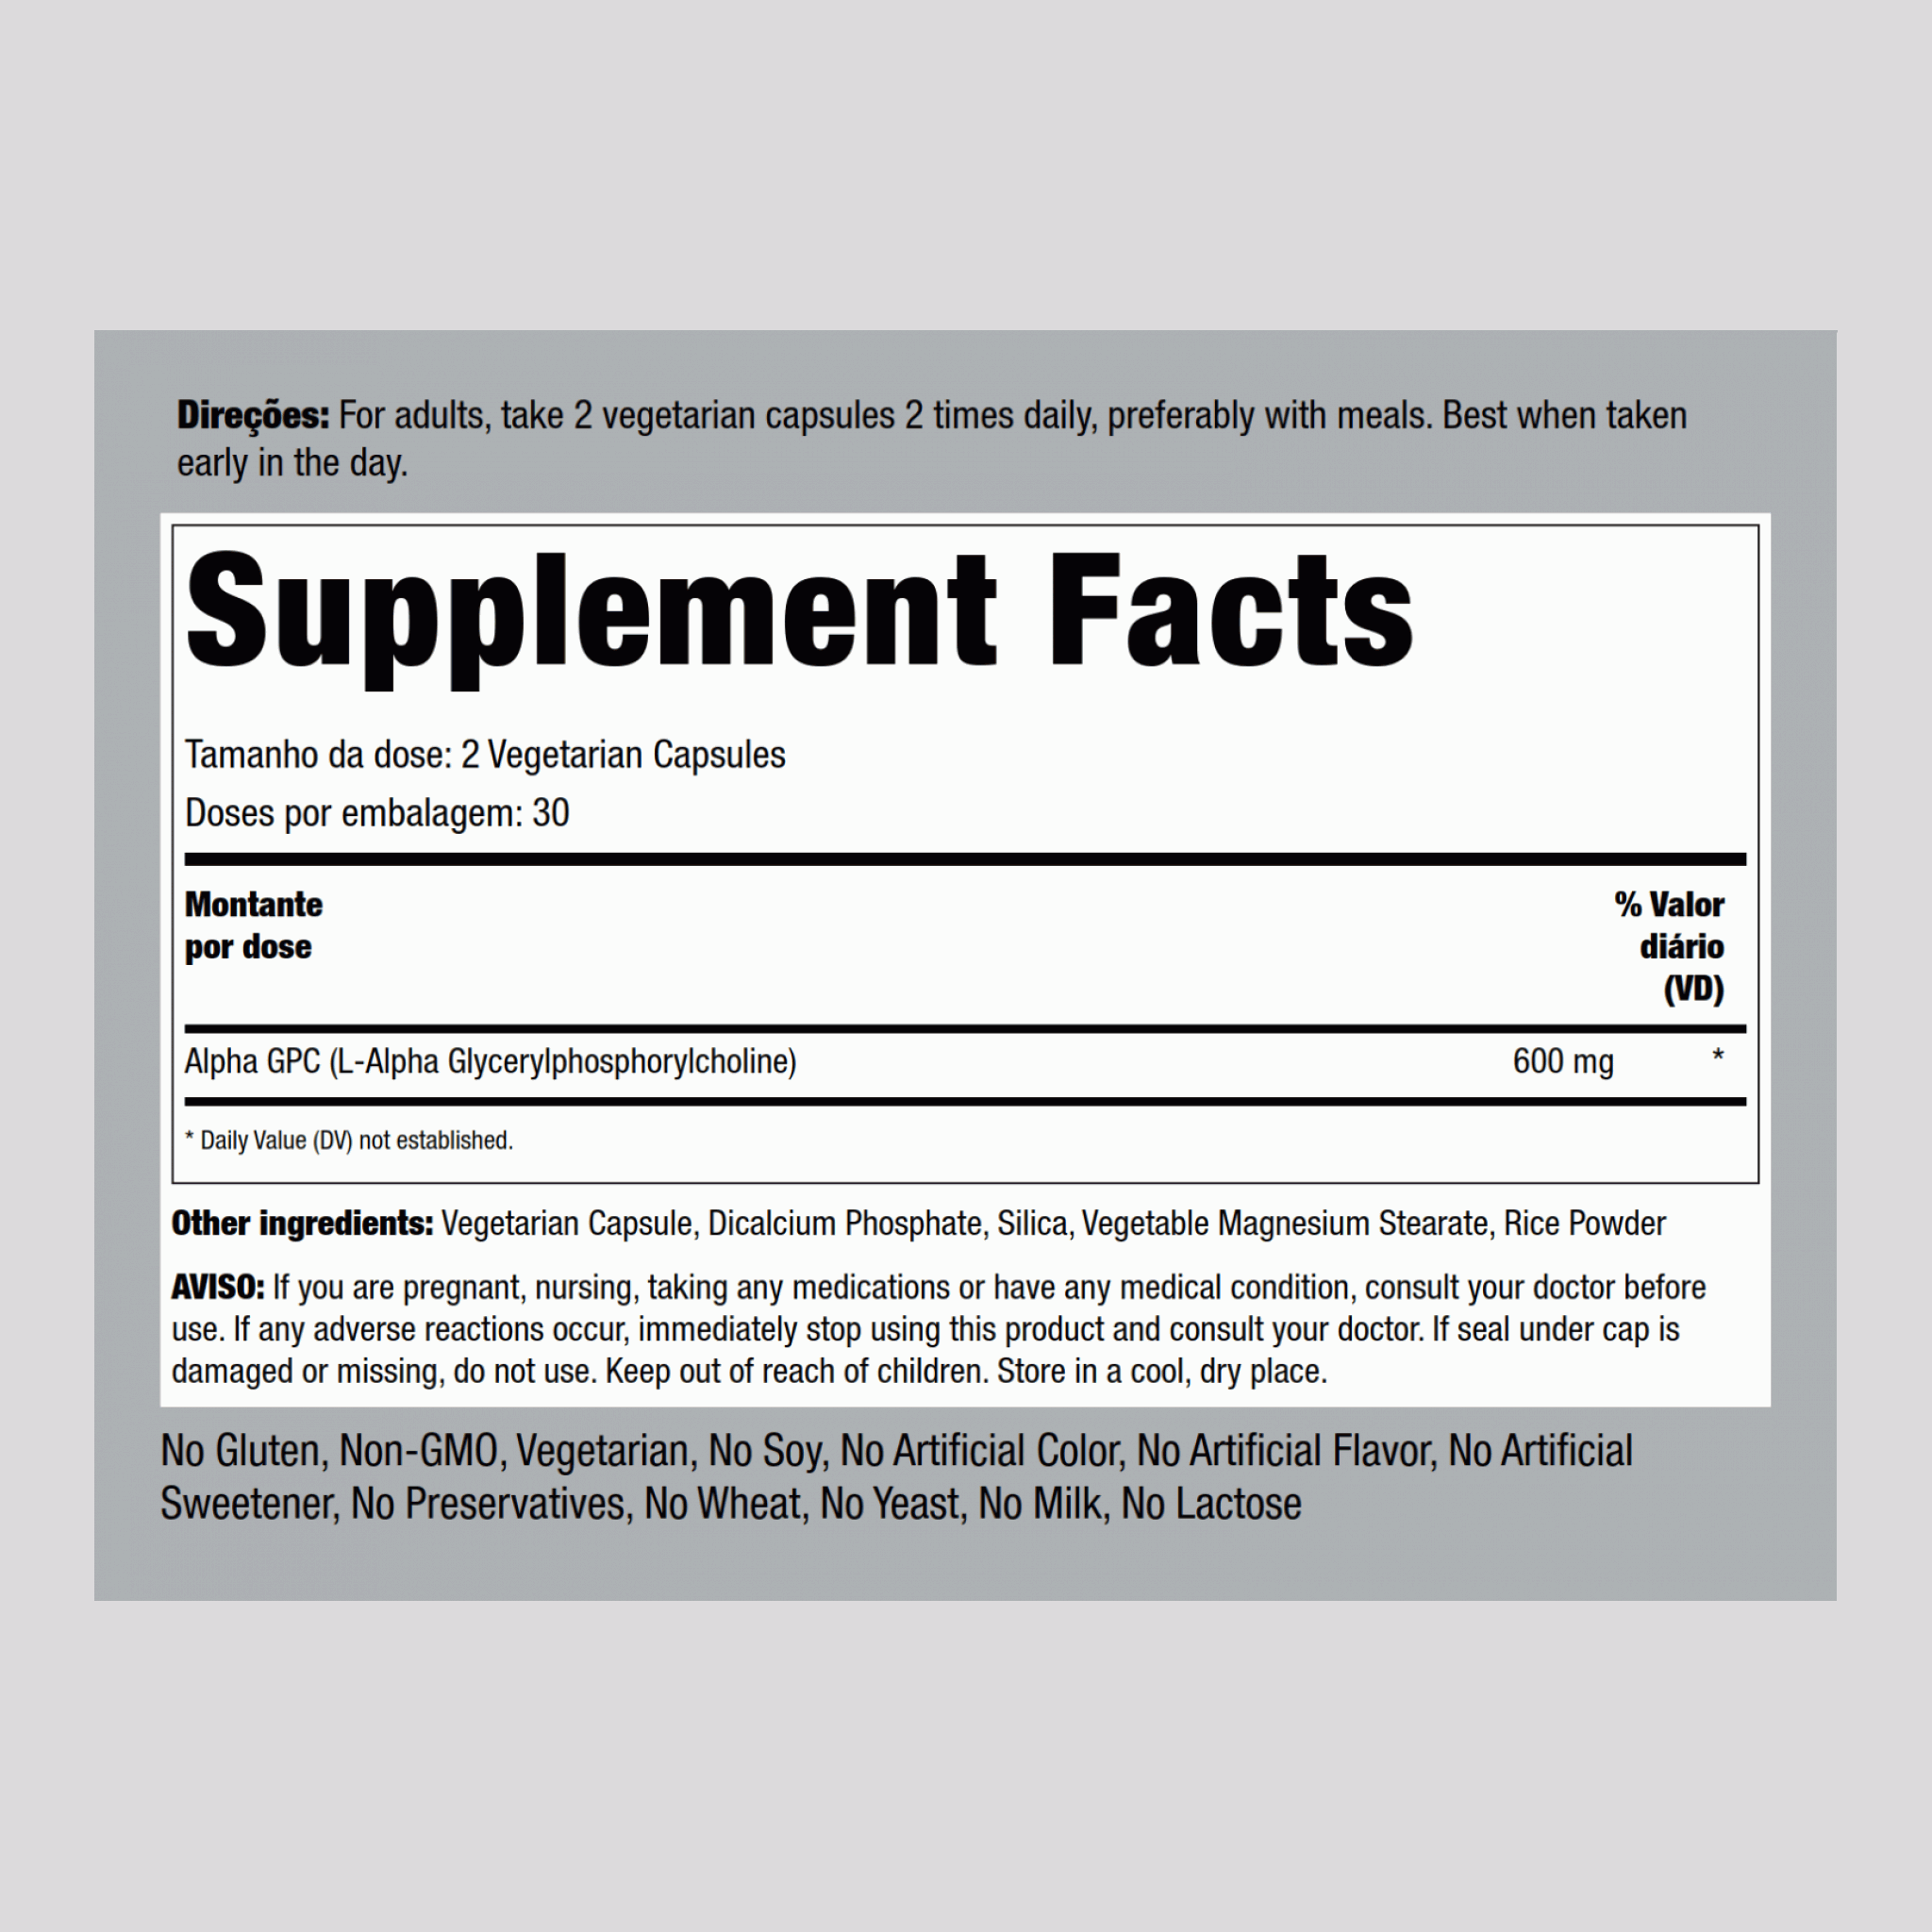 Alpha GPC  300 mg 60 Vegetarische Kapseln     